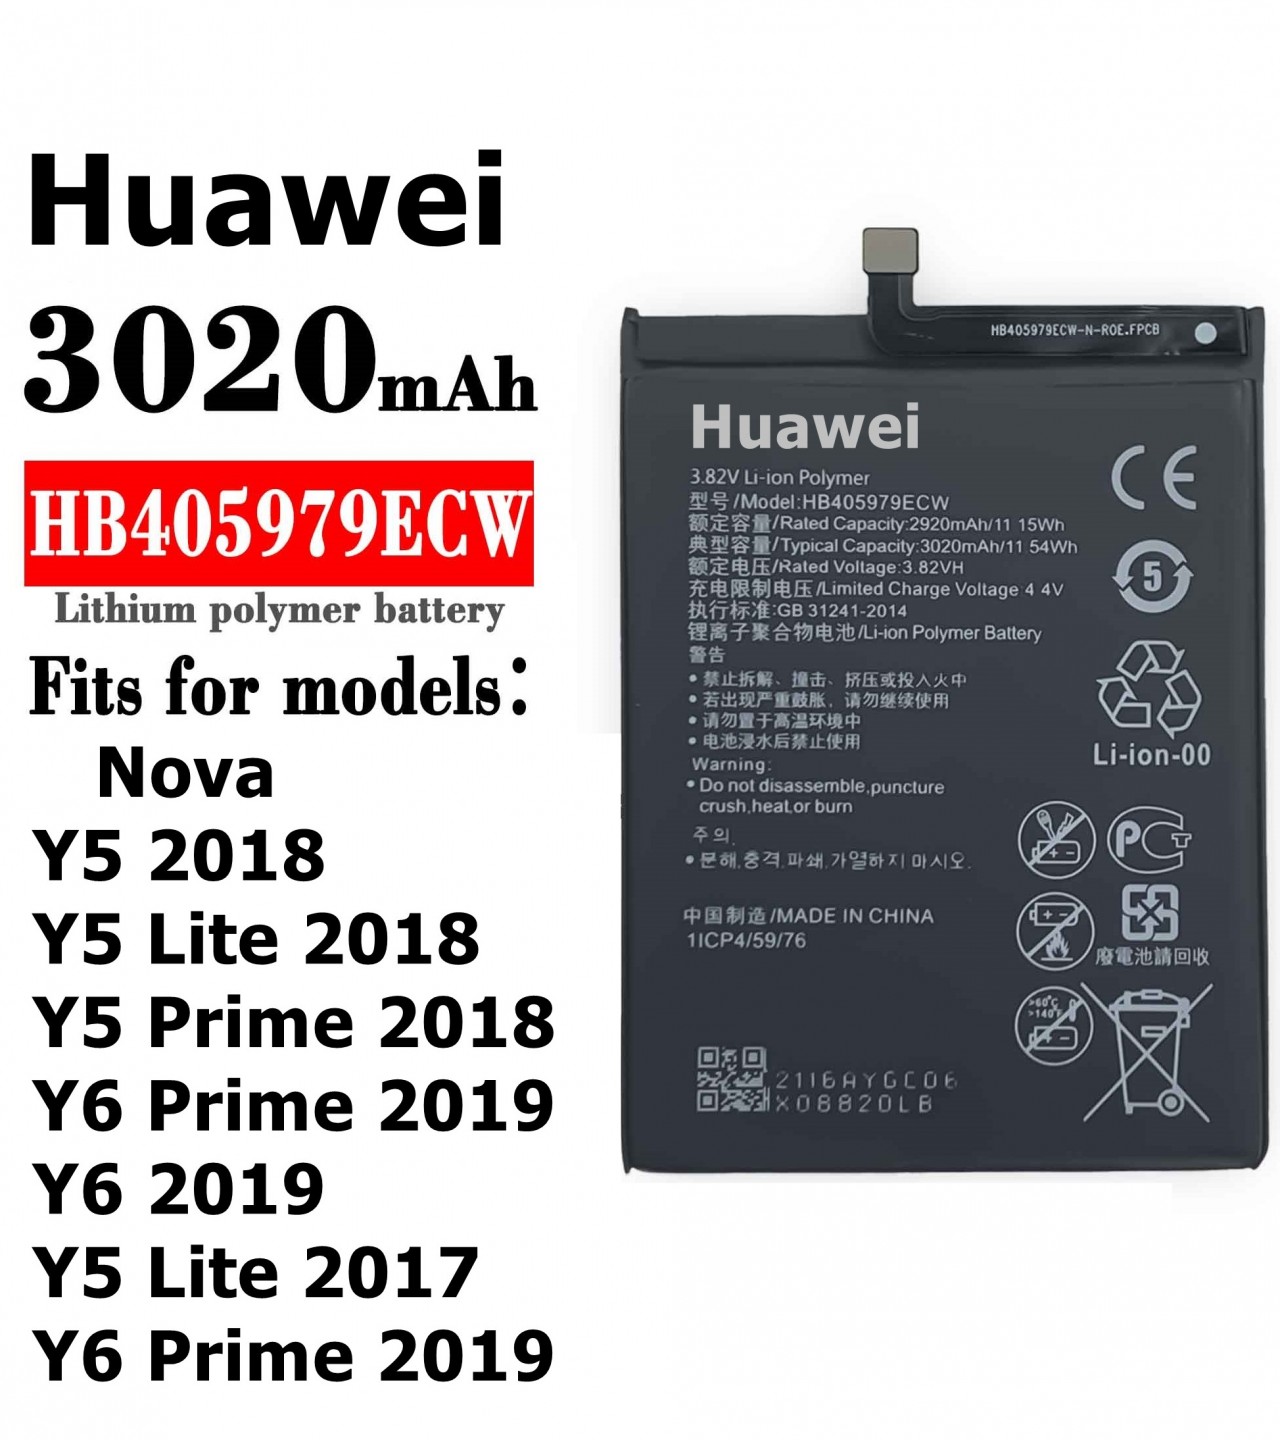 HB405979ECW  Battery For Huawei Y5 2017 / Y5 Lite 2017 Capacity-3020mAh  Black